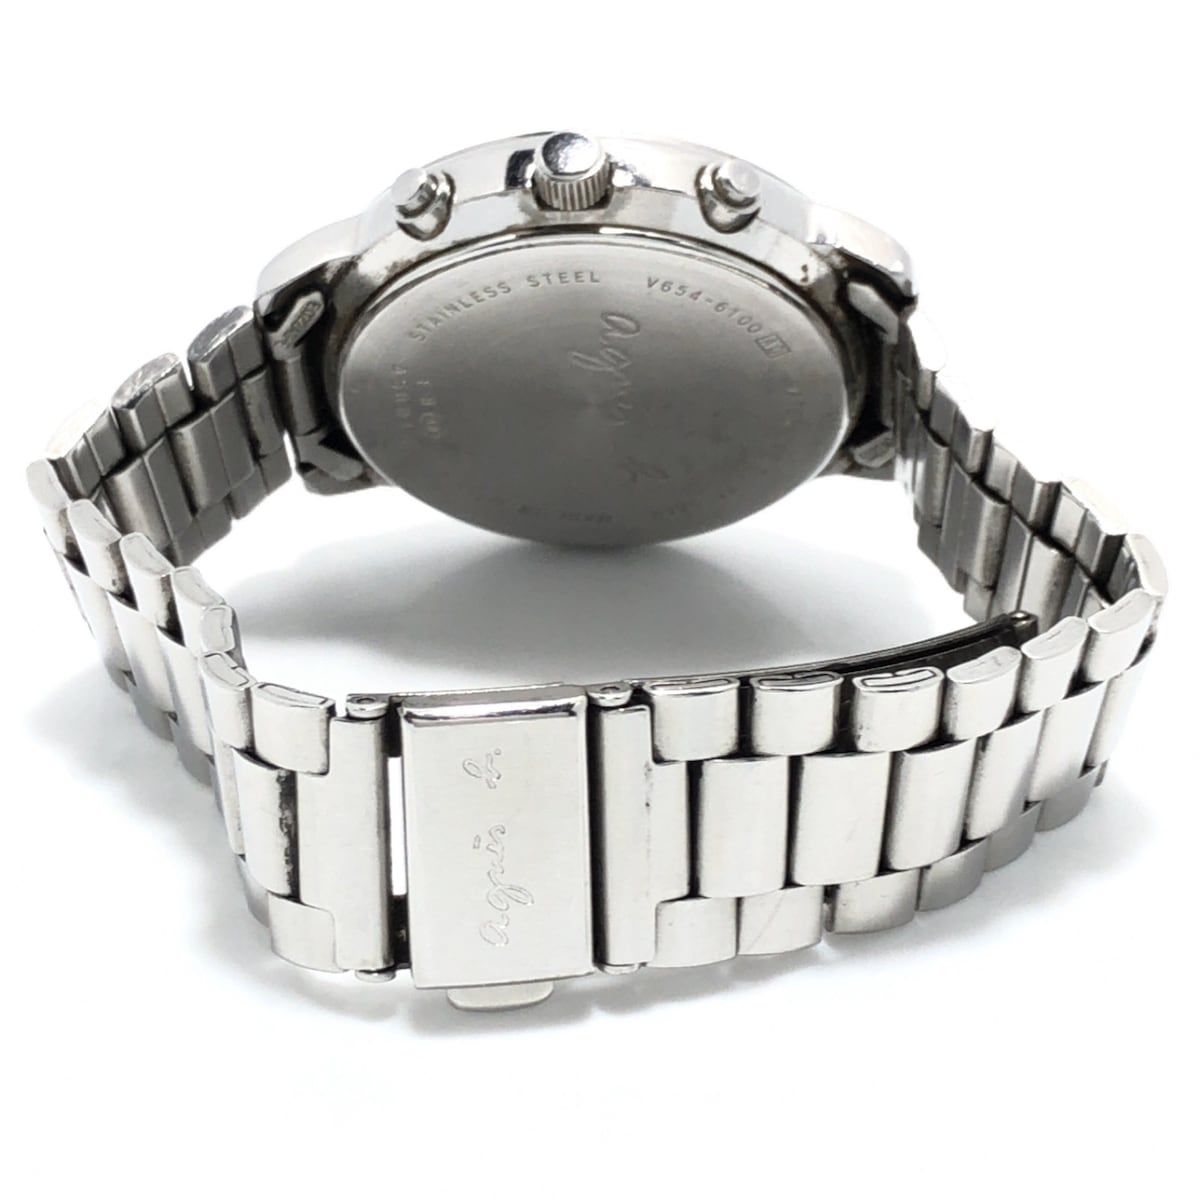 agnes b(アニエスベー) 腕時計 - V654-6100 ボーイズ クロノグラフ 黒 - メルカリ